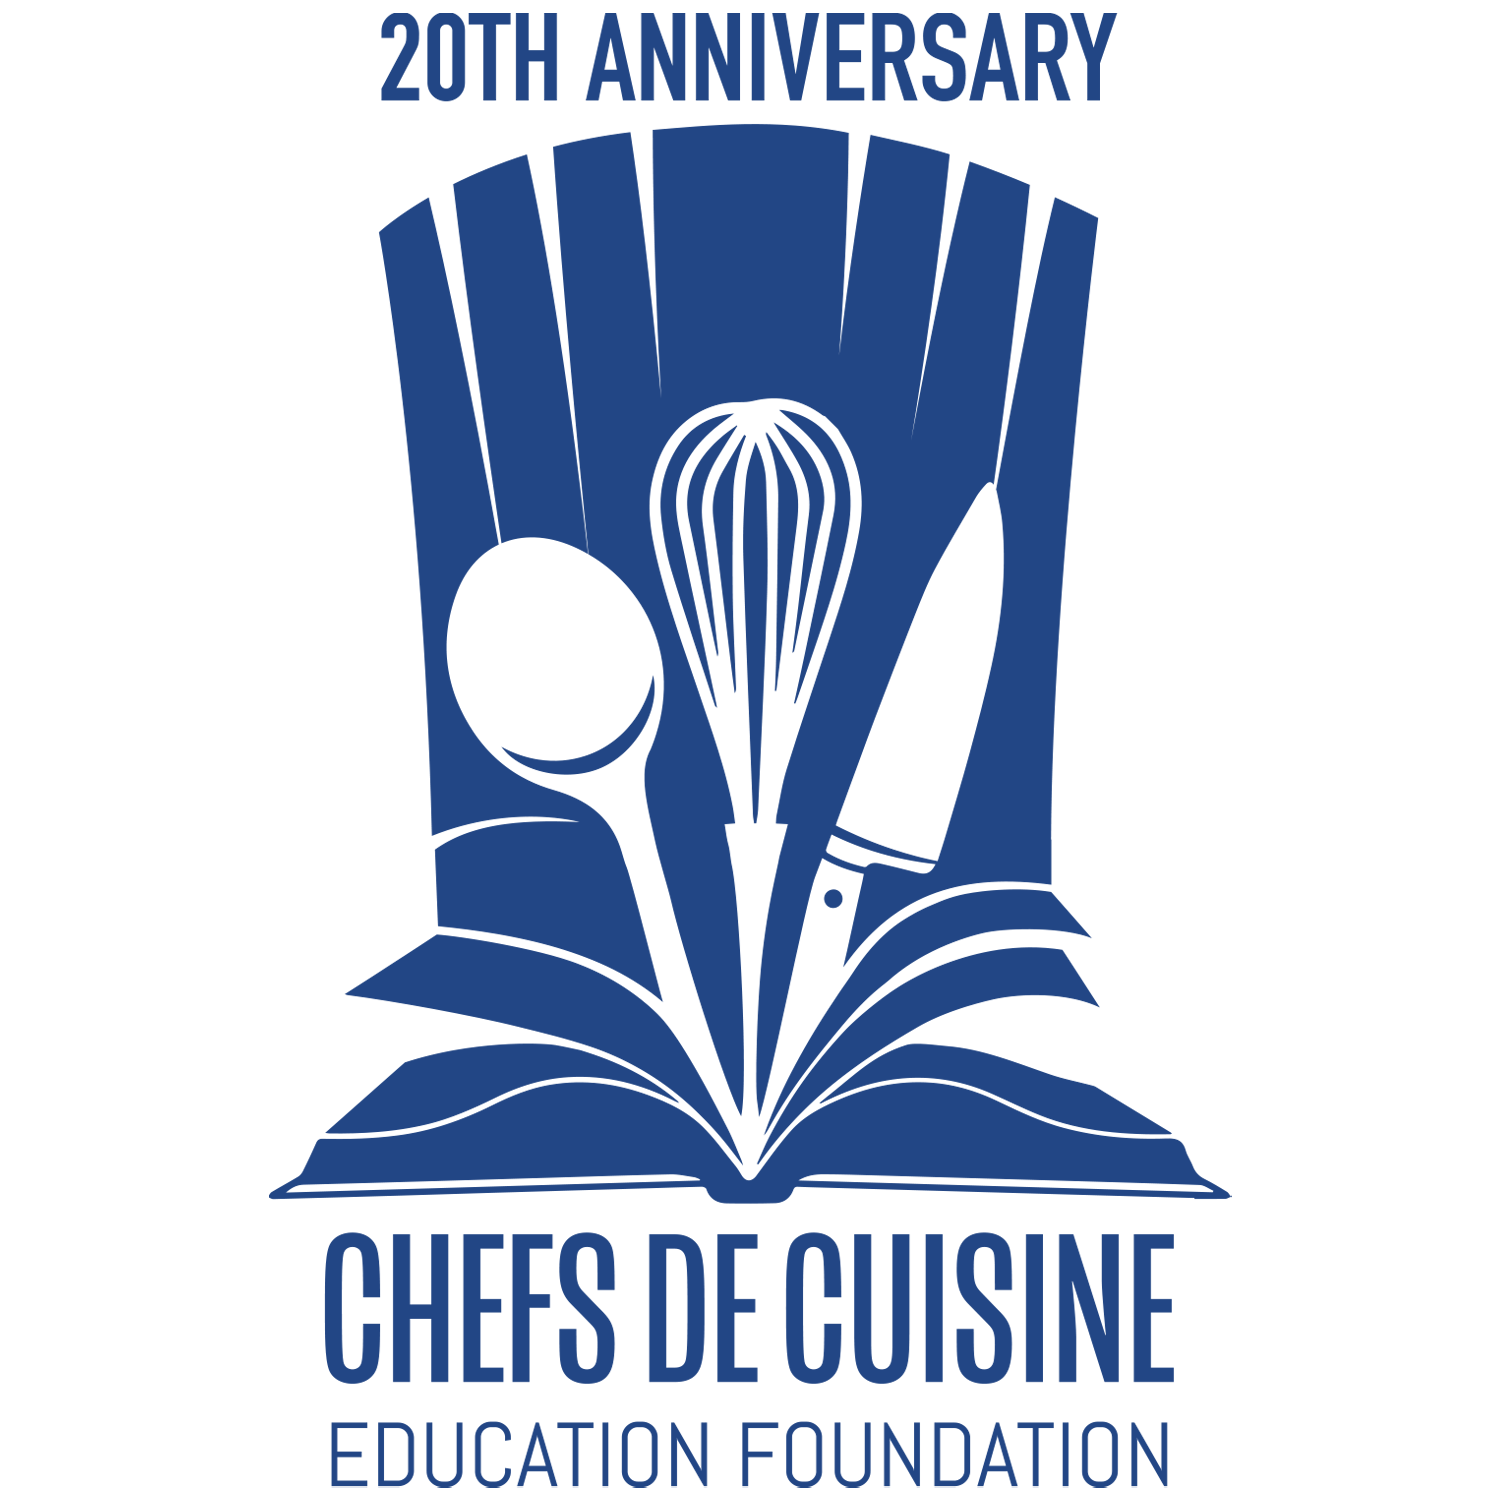 Chefs De Cuisine Education Foundation